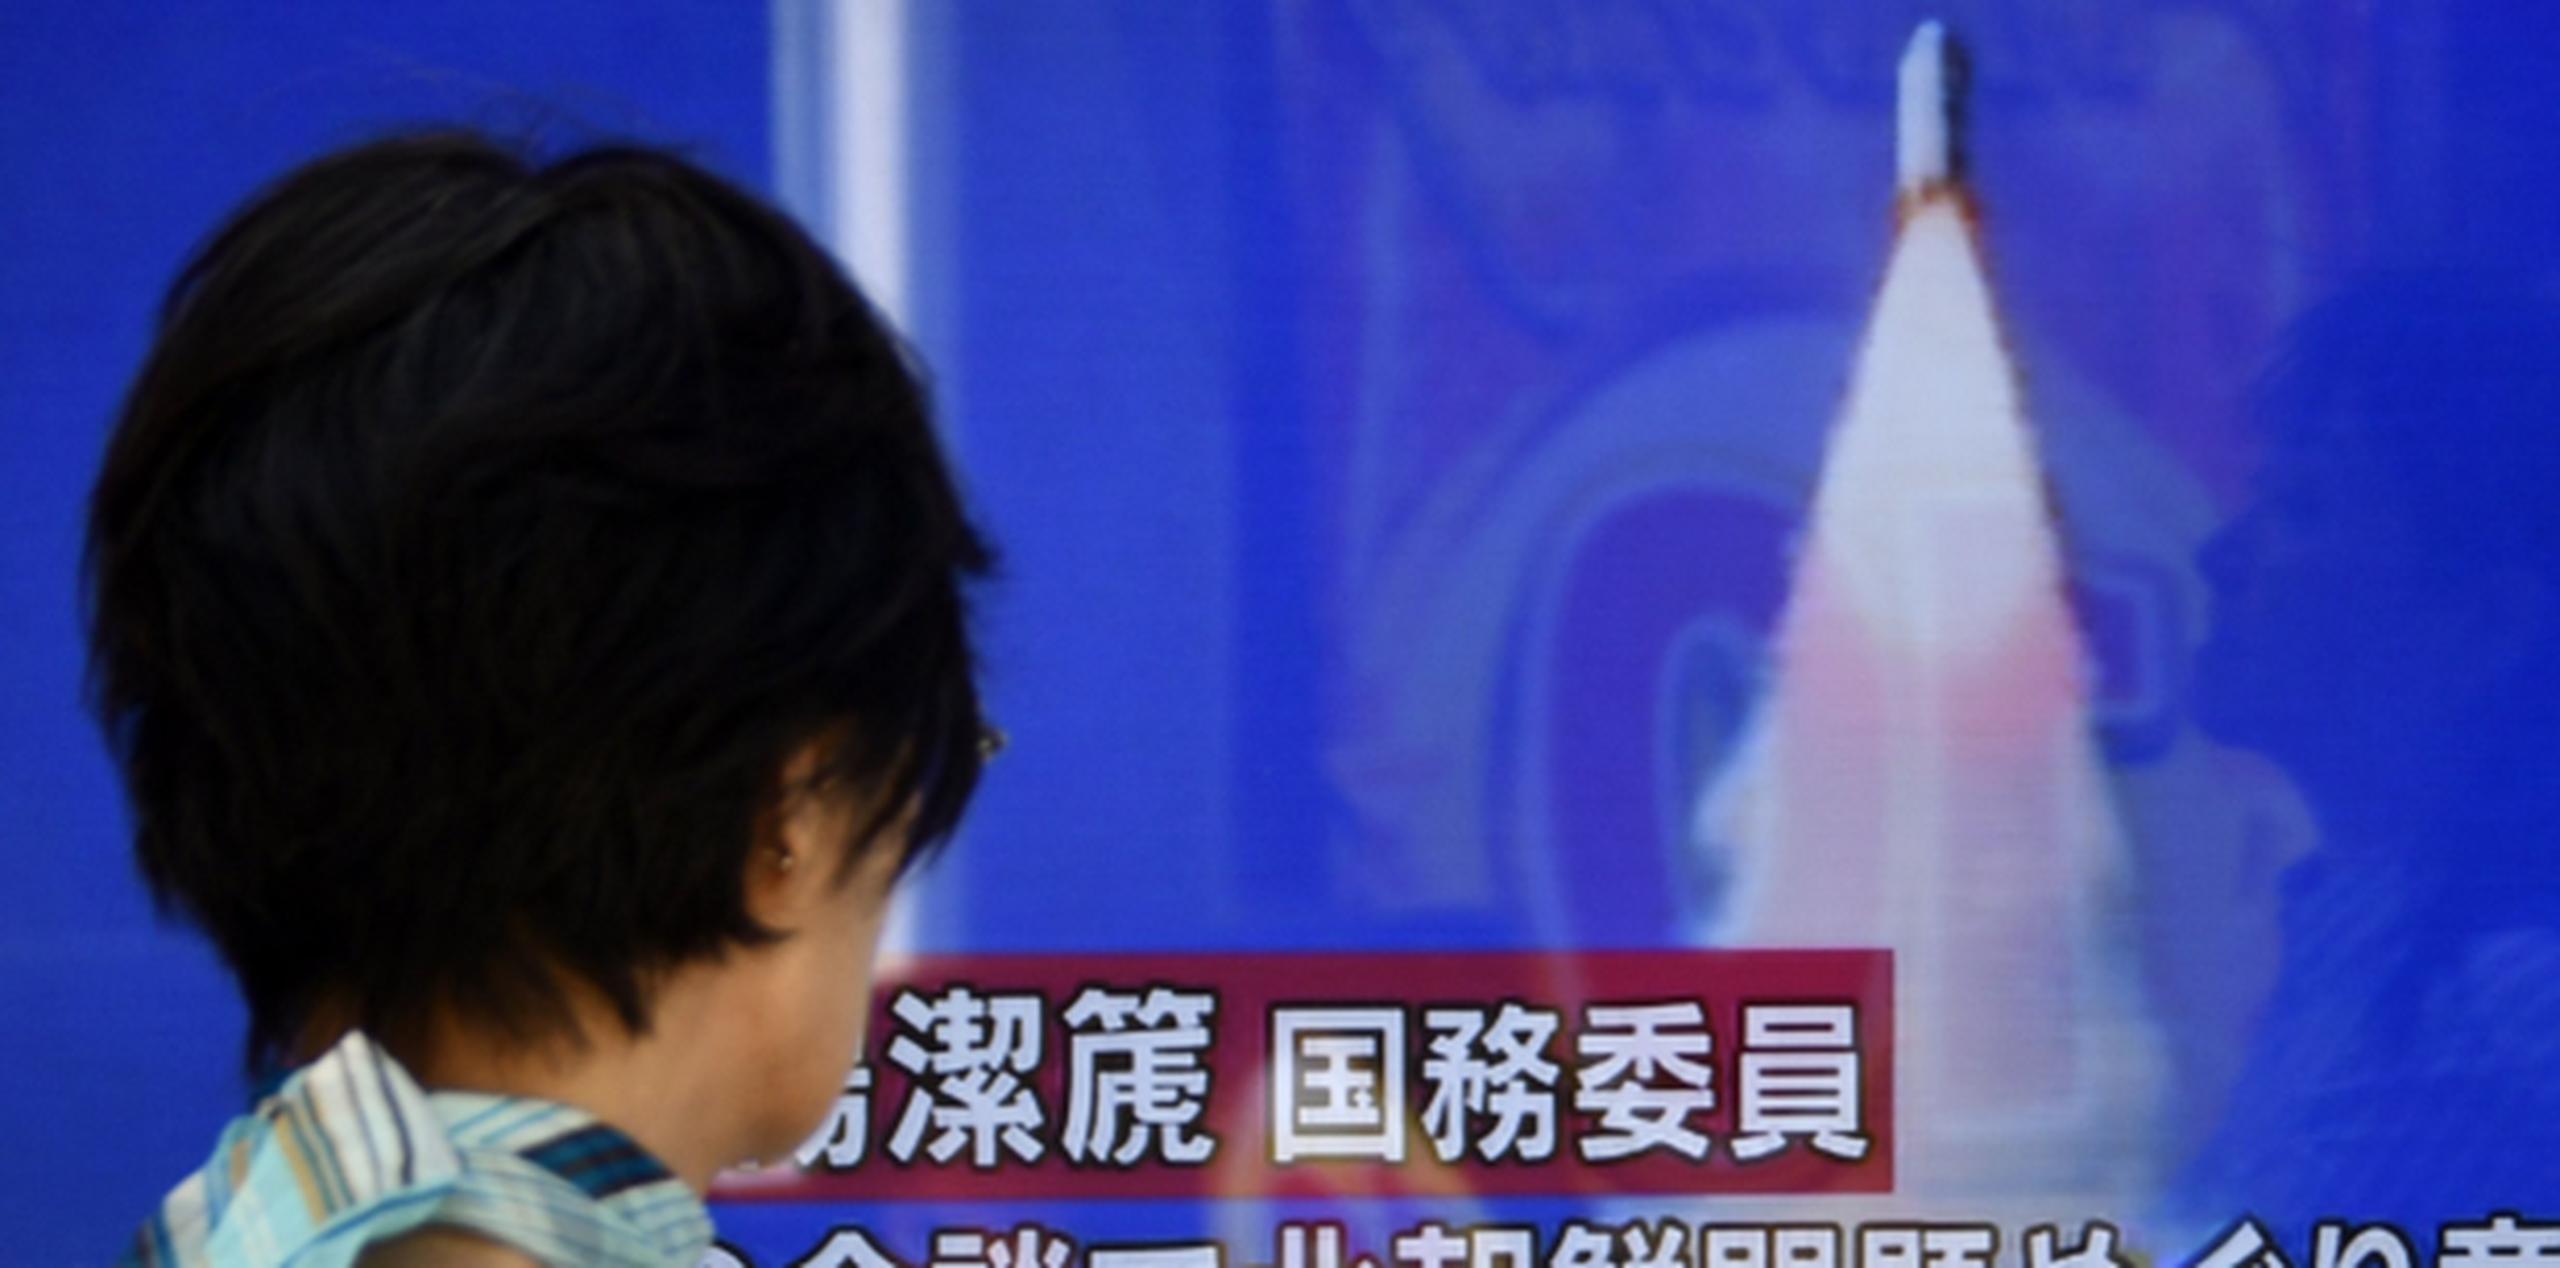 Una mujer en Tokio observa en la pantalla de un televisor en una calle noticias del lanzamiento del cohete que cayó en el Mar de Japón. (EFE)